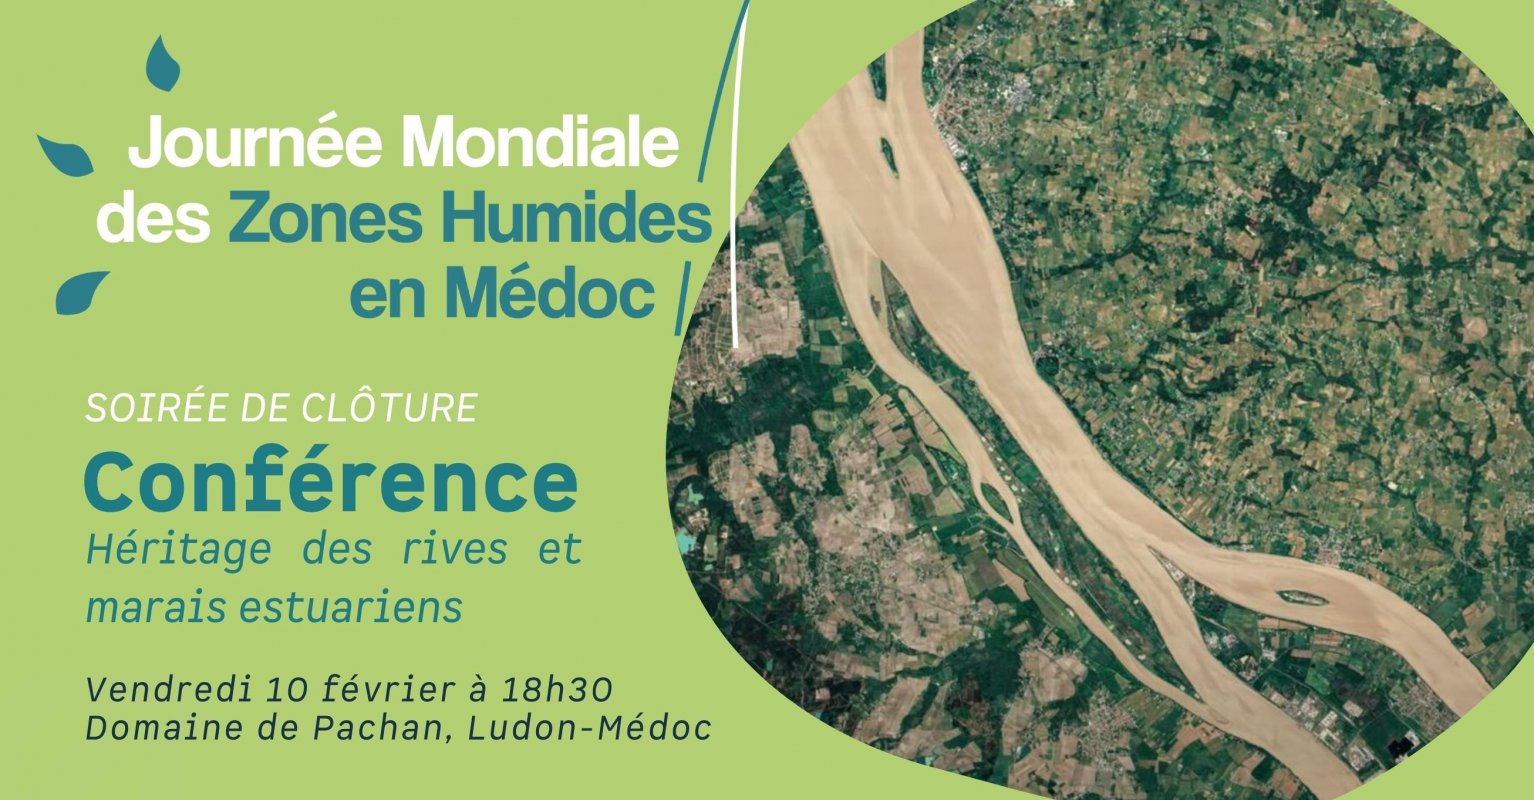 Conférence : Héritage des rives et marais estuariens